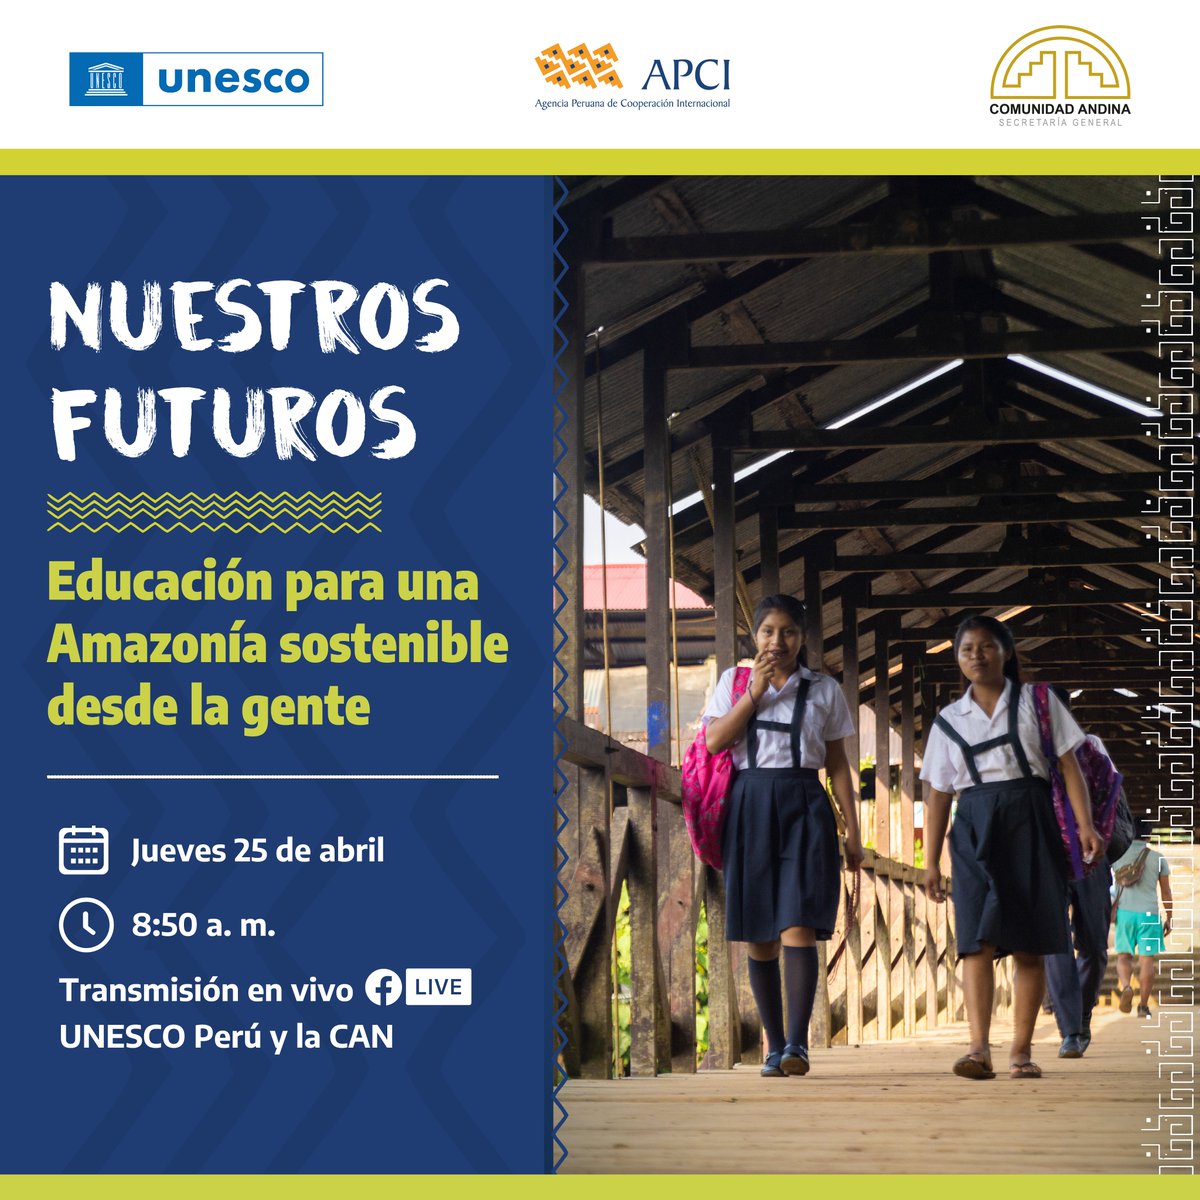 📌Te invitamos a conectarte a la transmisión del evento 'Nuestros futuros: Educación para una Amazonia sostenible desde la gente” que se realizará el 25 de abril. 📚Se abordarán los desafíos vigentes de la Amazonia poniendo en el centro el potencial de transformación de educación